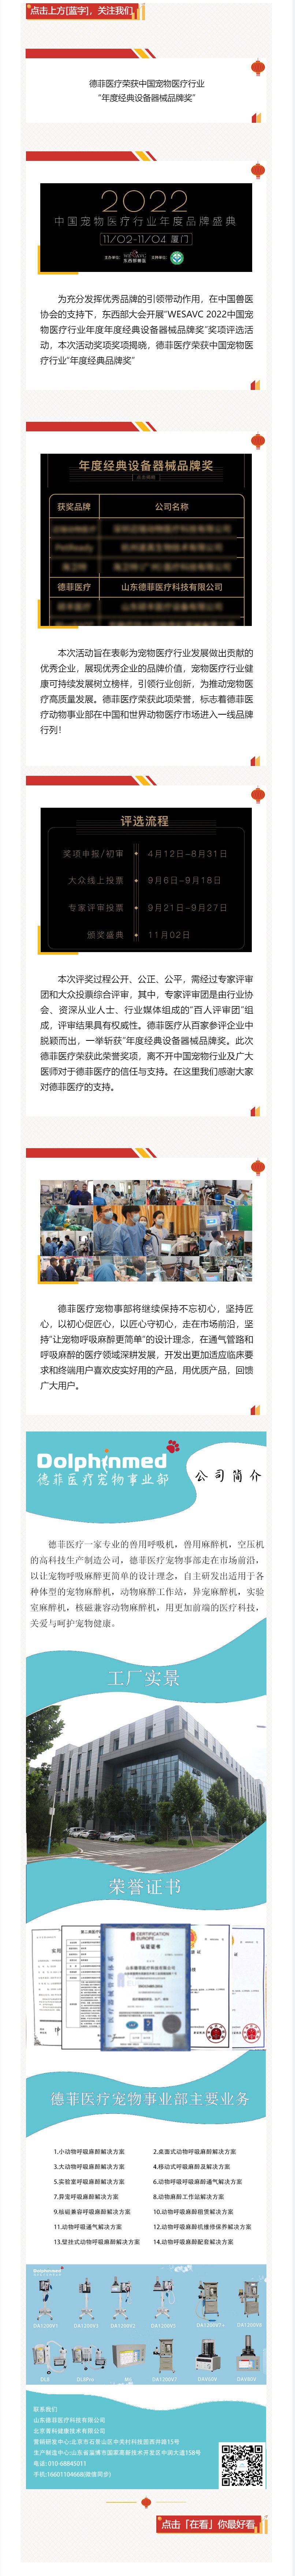 德菲医疗荣获中国宠物医疗行业“年度经典设备器械品牌奖” .jpg